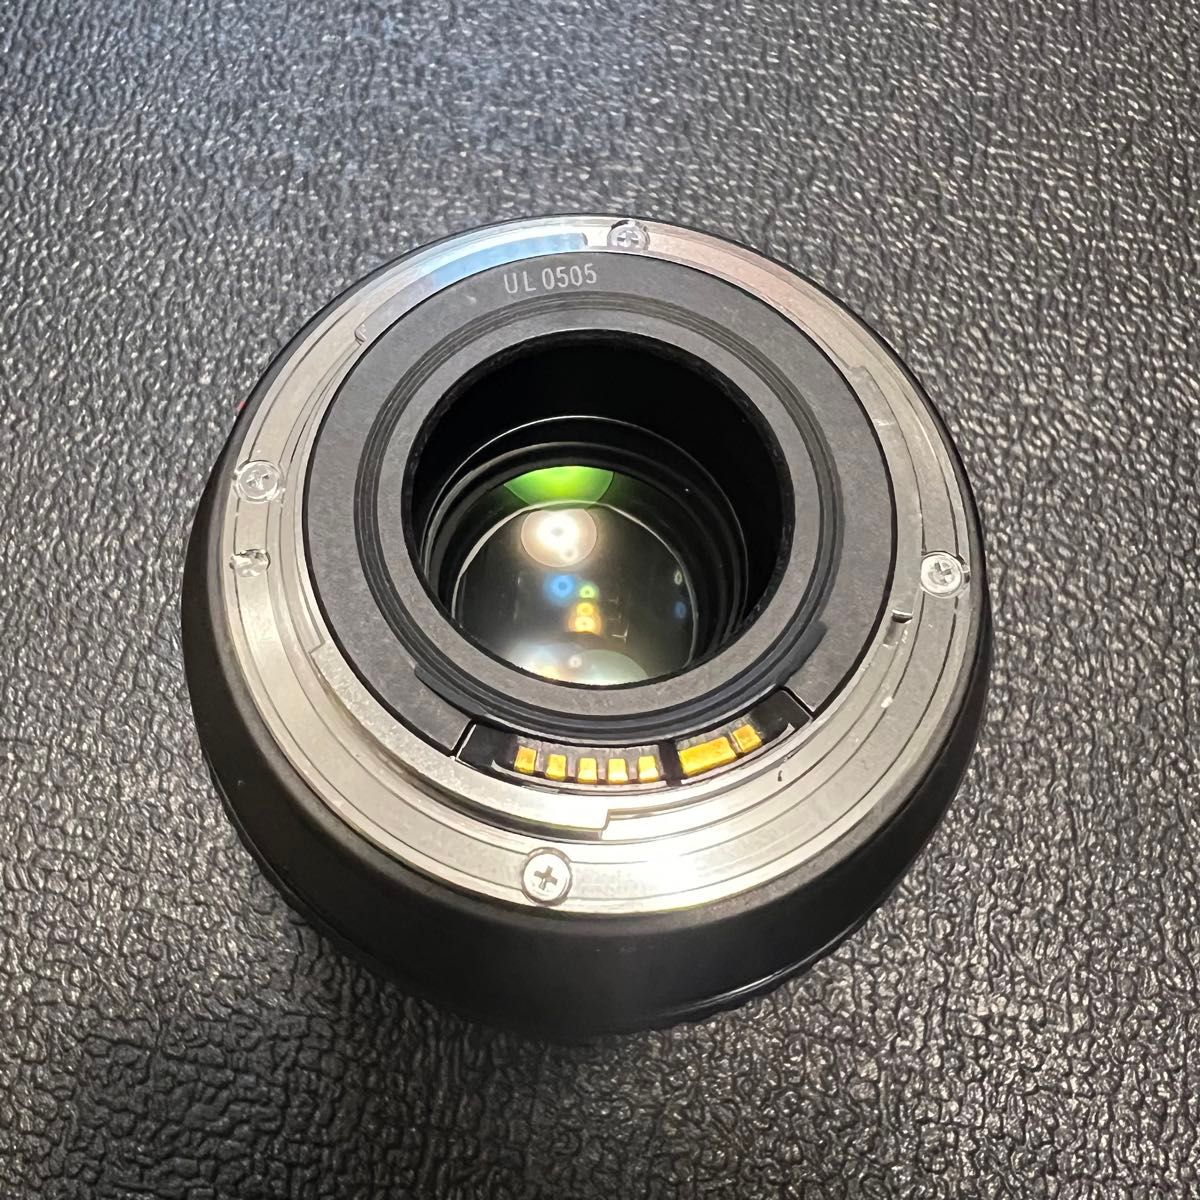 EF 28-70 F2.8 L USM Canon キャノン カメラ レンズ